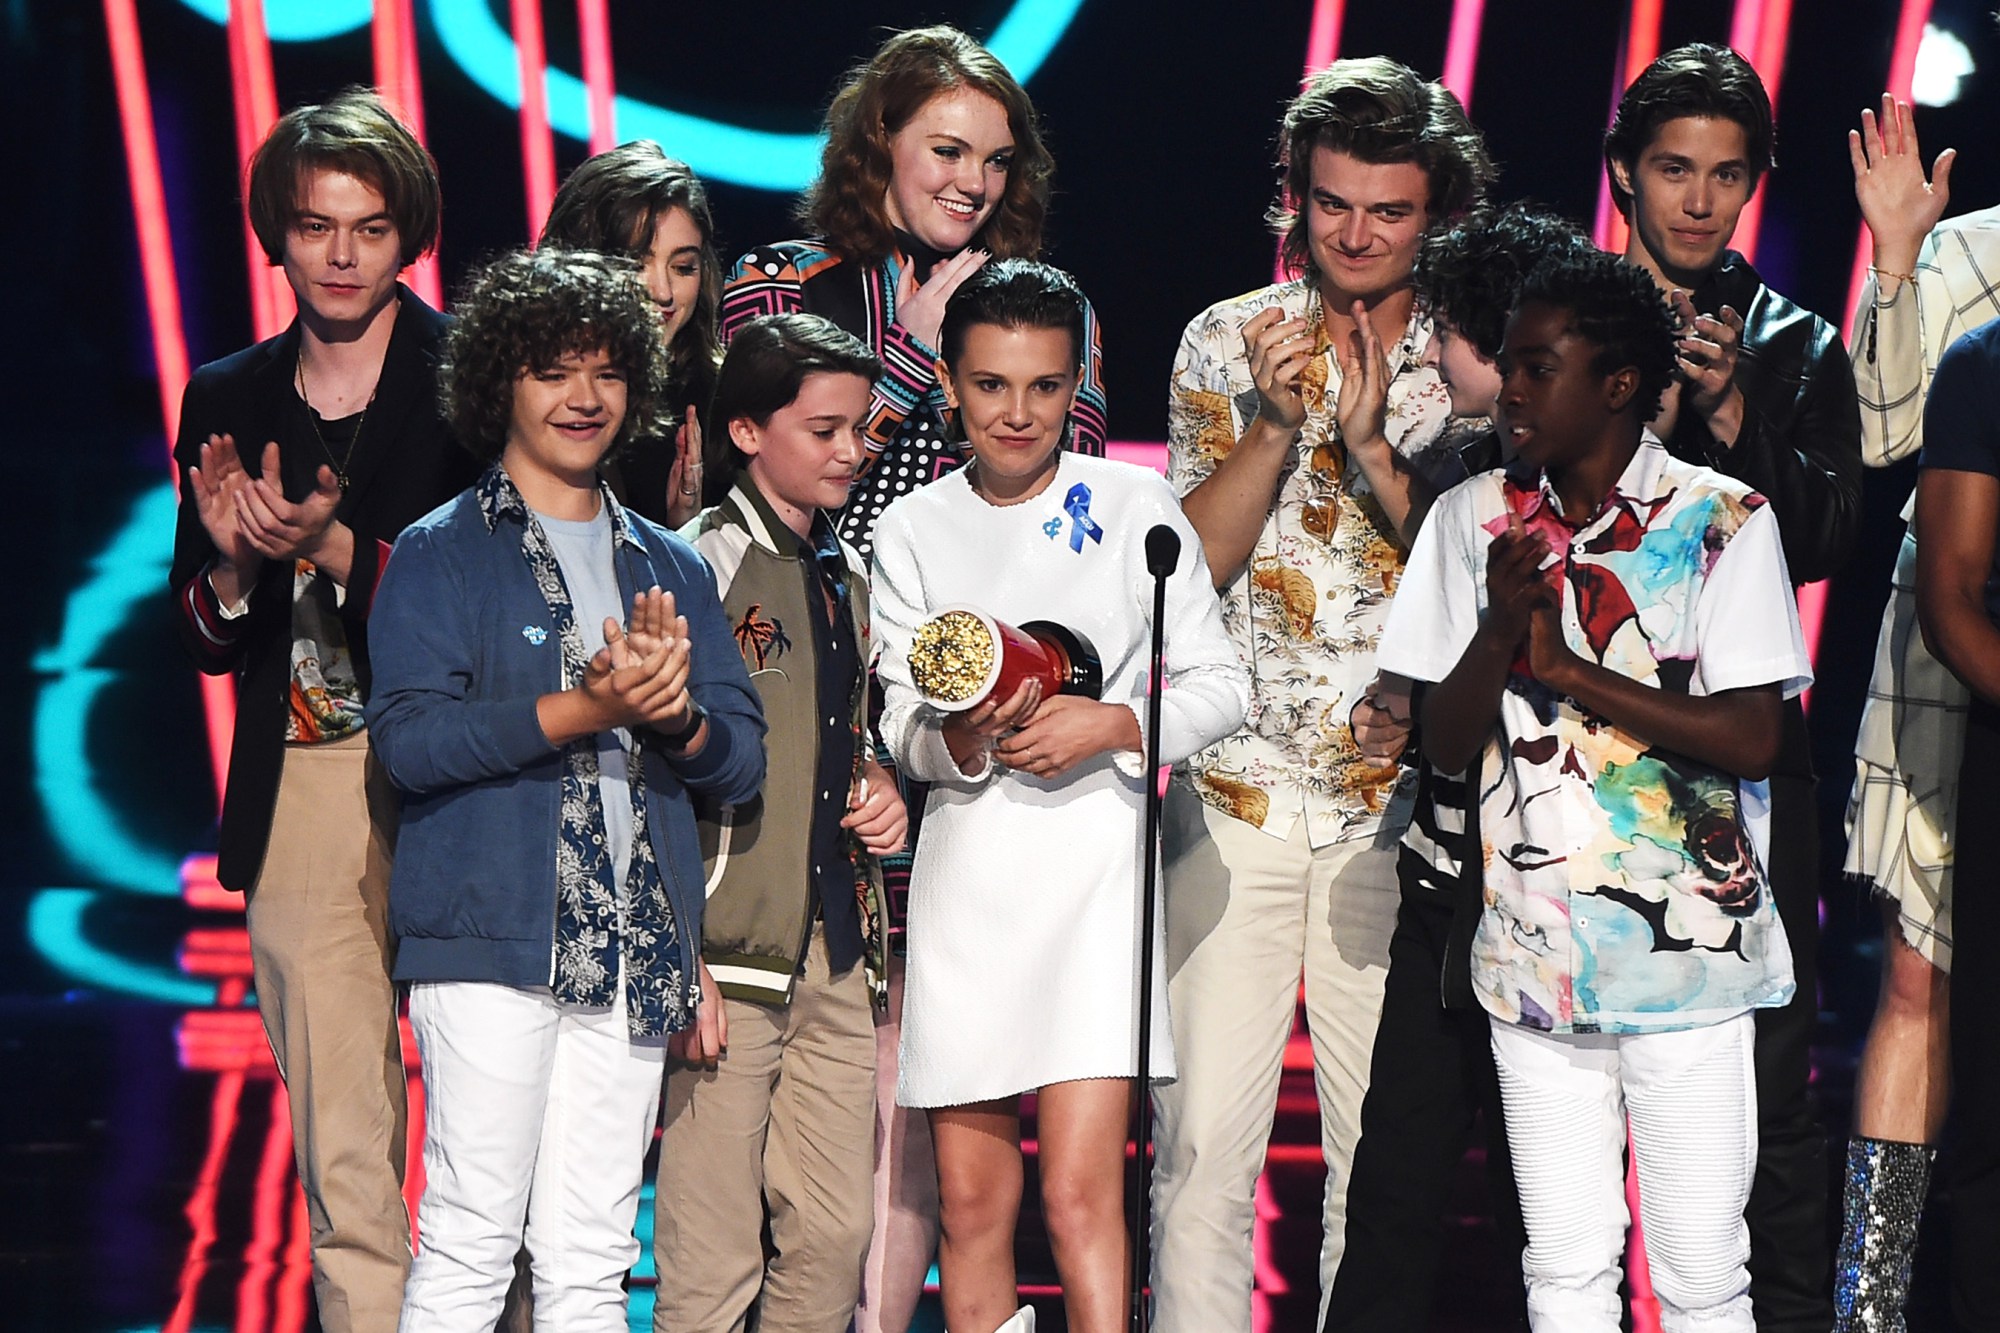 STRANGER THINGS vince il premio SHOW DELL’ANNO agli MTV MOVIE & TV AWARDS